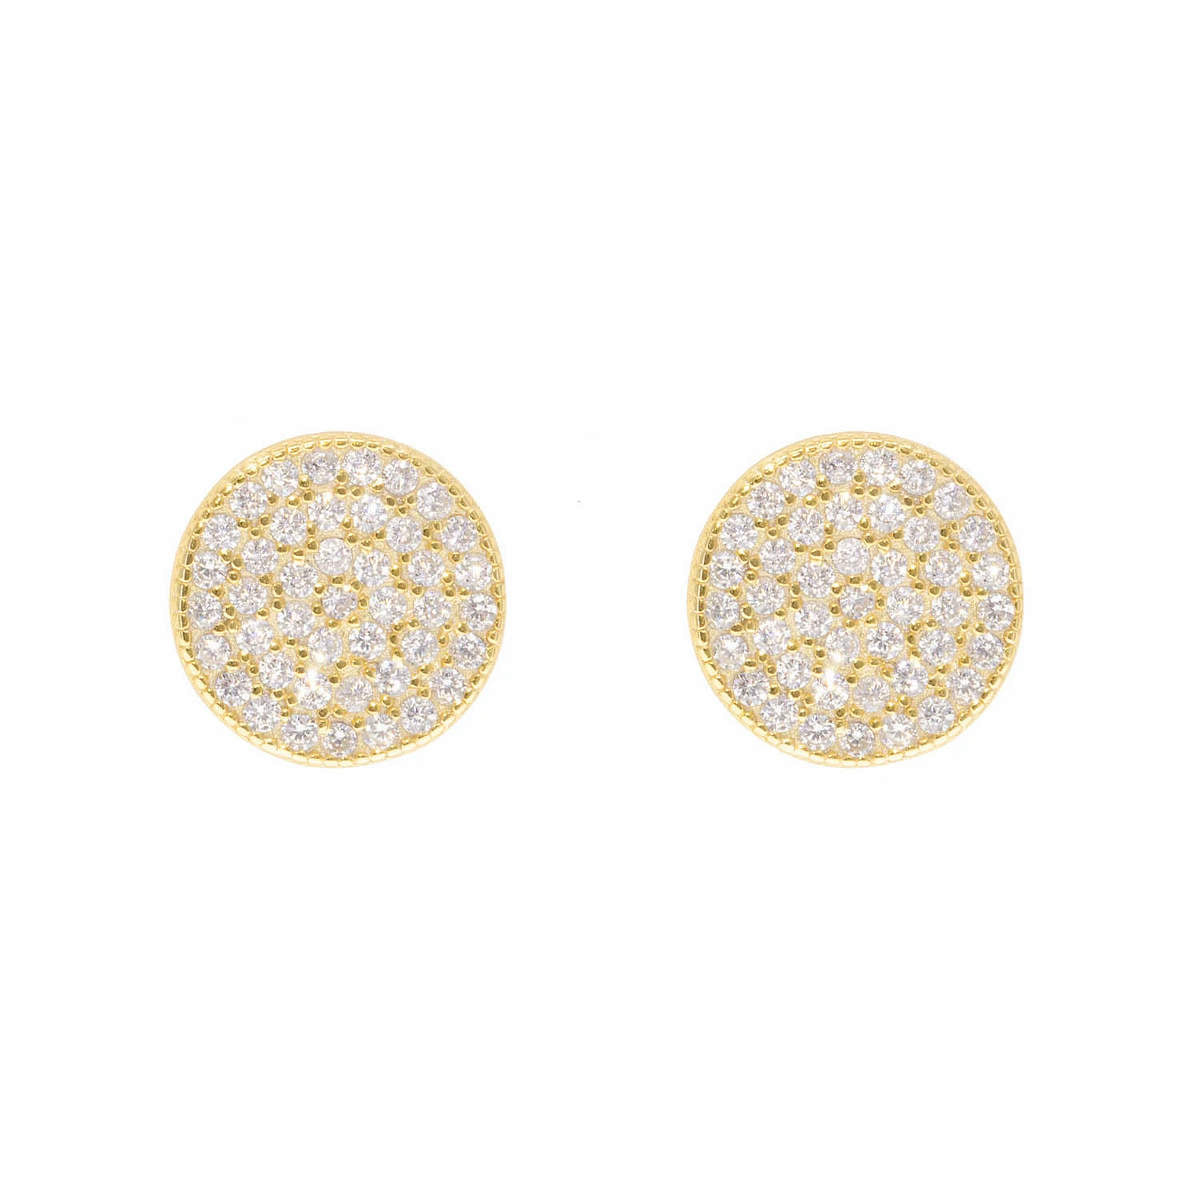 Crystal Meridian Earrings in Gold